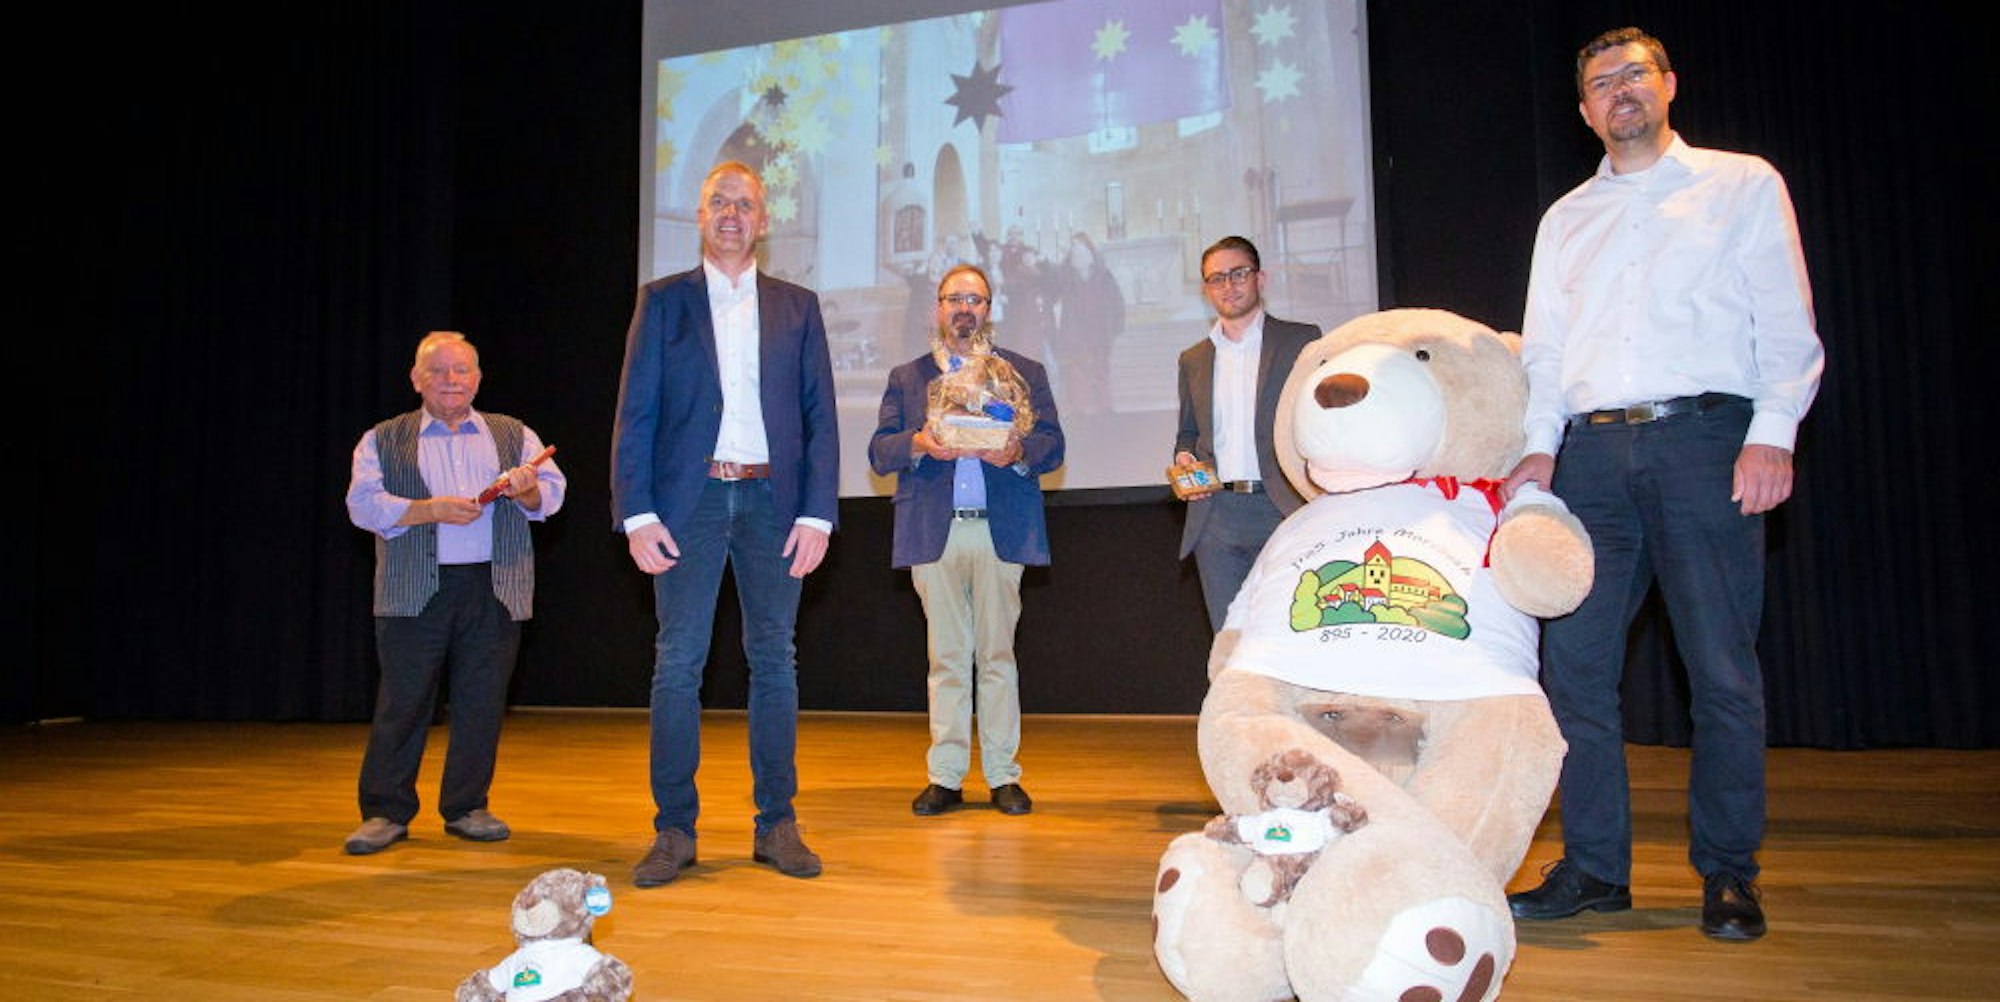 Der Morsbär spielt eine zentrale Rolle in der Übertragung am Samstag, die Bürgermeister Jörg Bukowski (r.) nun vorgestellt hat.